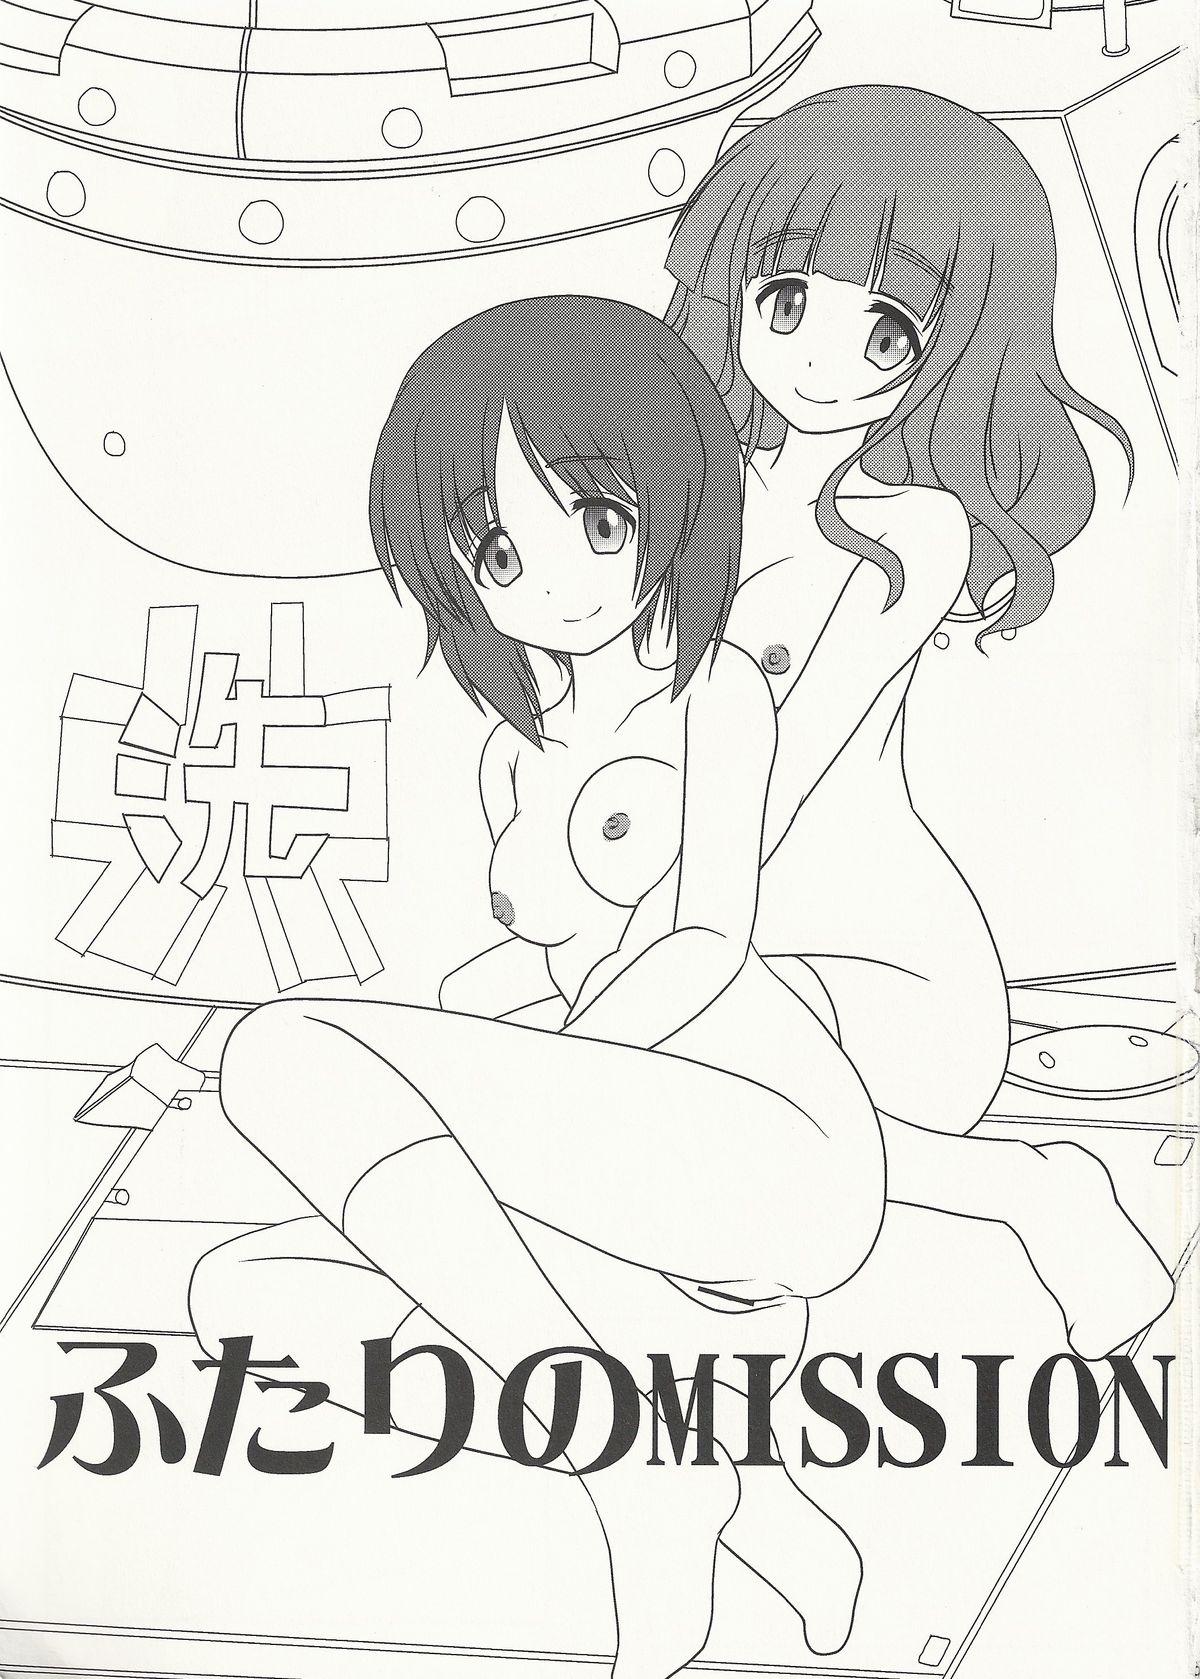 Blows Futari no MISSION - Girls und panzer Lesbians - Page 2